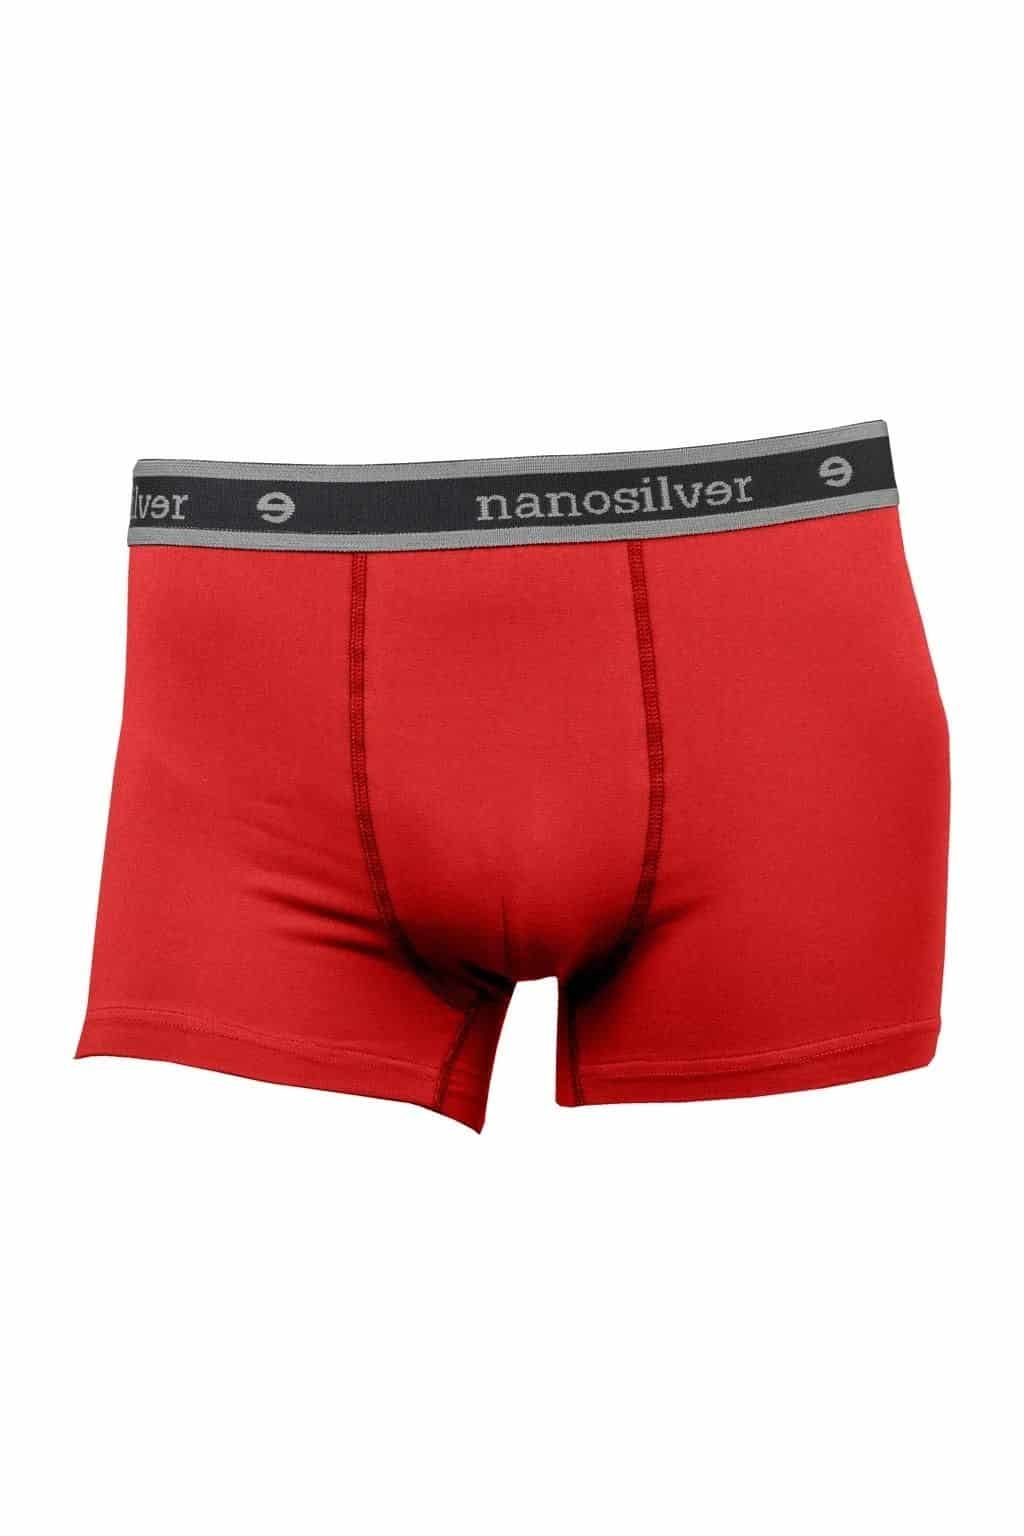 nanosilver® Nano boxerky s gumou nanosilver bez zadního švu – červené Velikost: L